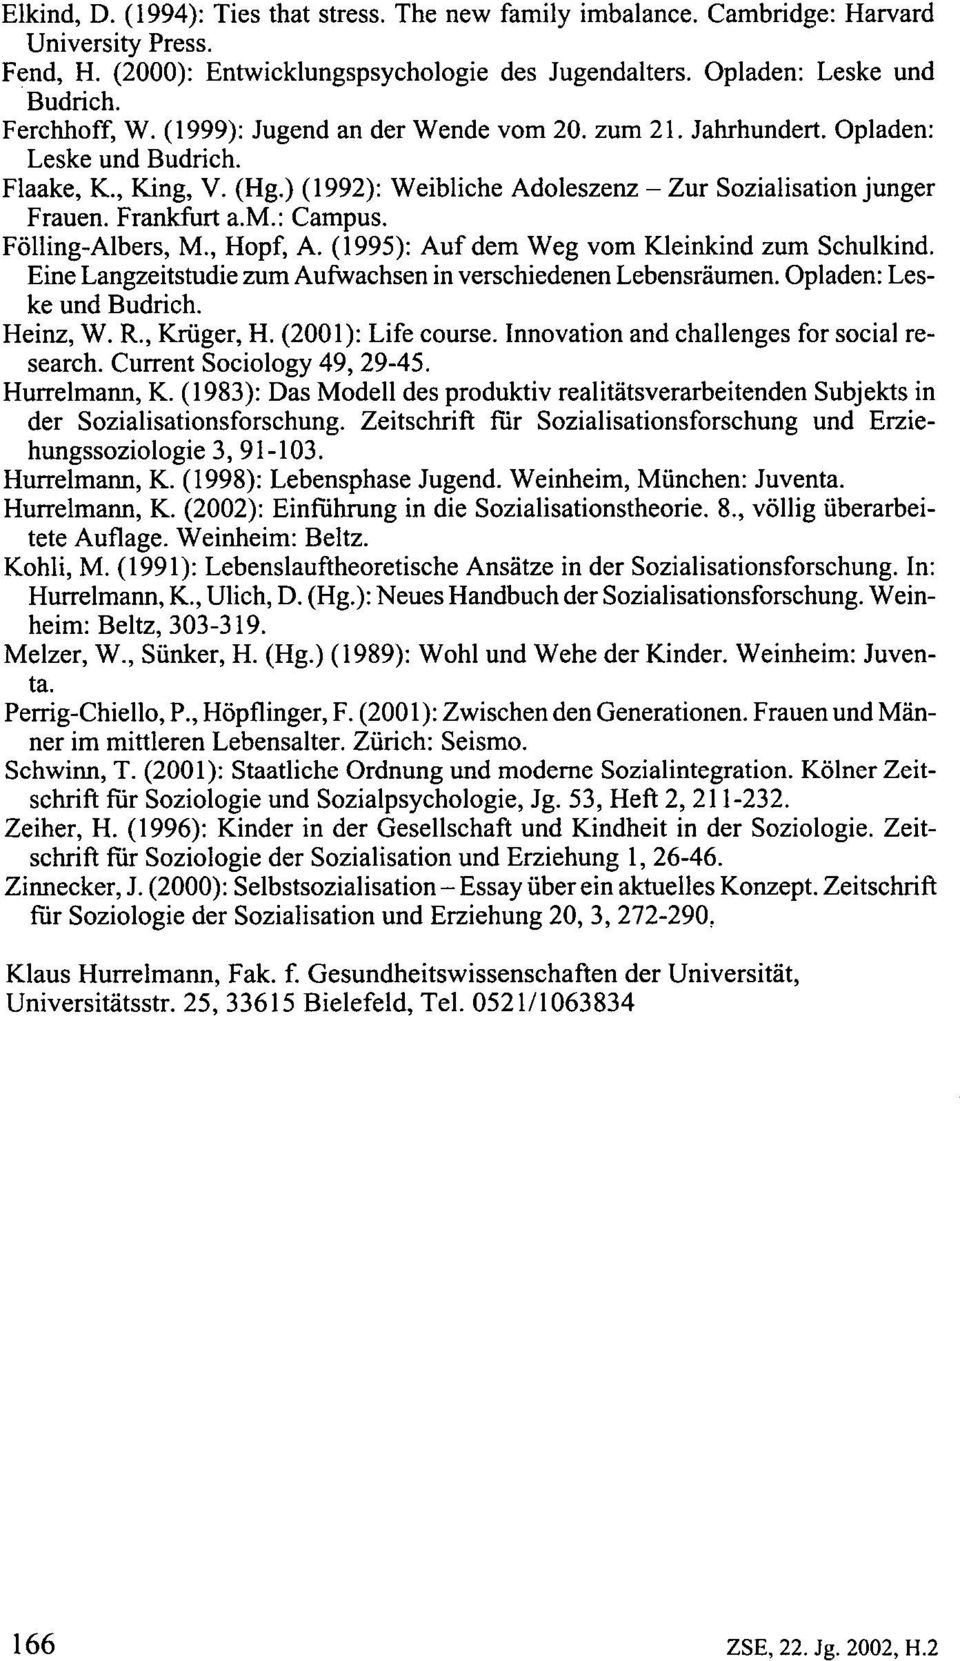 FöllingAlbers, M., Hopf, A. (1995): Auf dem Weg vom Kleinkind zum Schulkind. Eine Langzeitstudie zum Aufwachsen in verschiedenen Lebensräumen. Opladen: Les ke und Budrich. Heinz, W. R., Krüger, H.